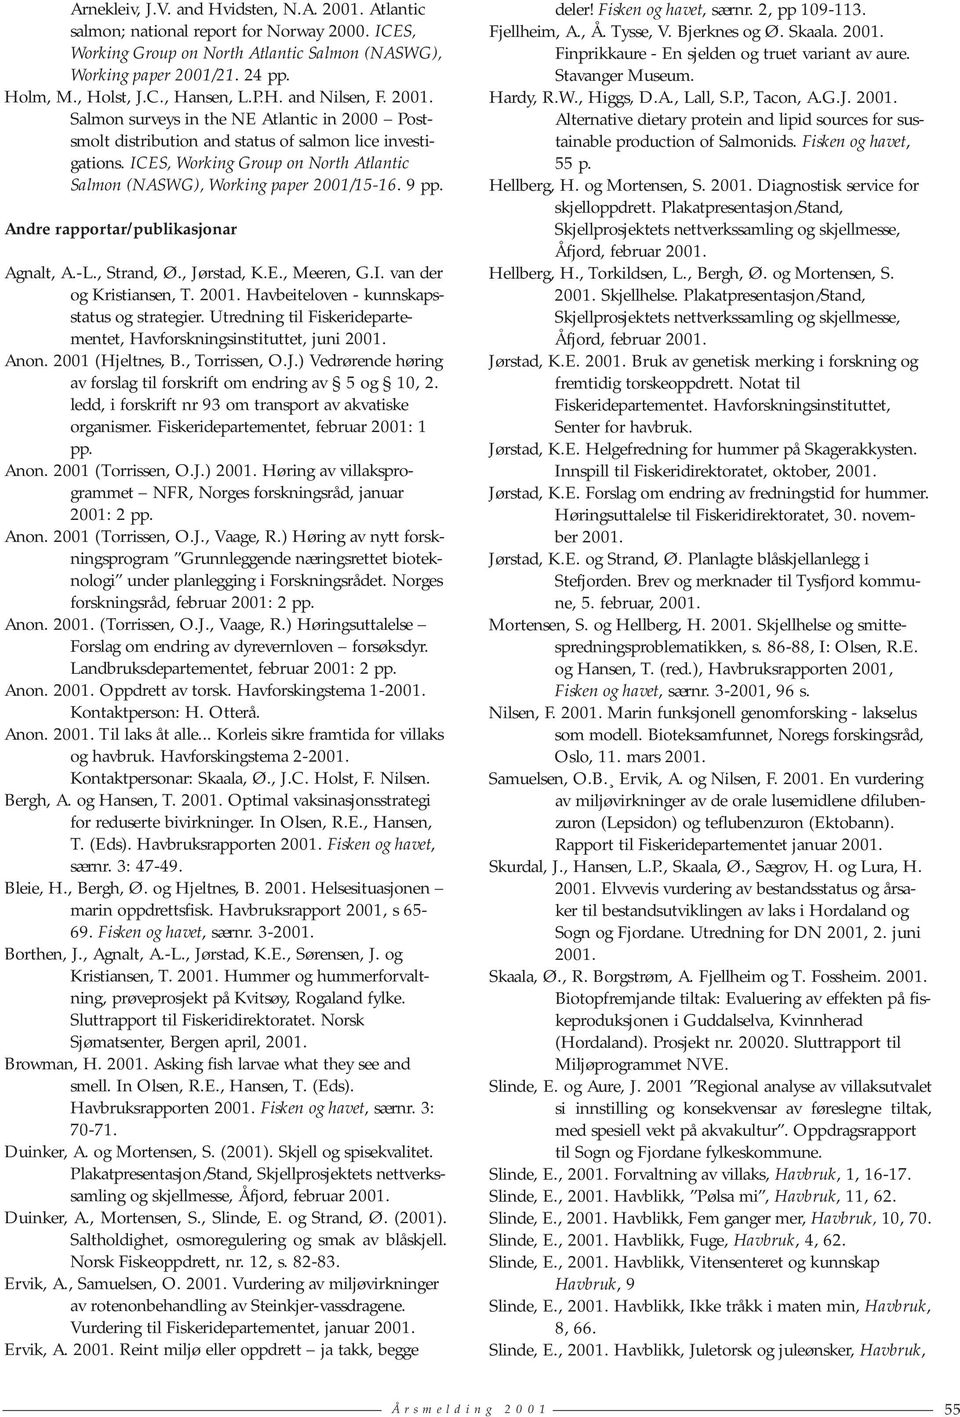 ICES, Working Group on North Atlantic Salmon (NASWG), Working paper 2001/15-16. 9 pp. Andre rapportar/publikasjonar Agnalt, A.-L., Strand, Ø., Jørstad, K.E., Meeren, G.I. van der og Kristiansen, T.